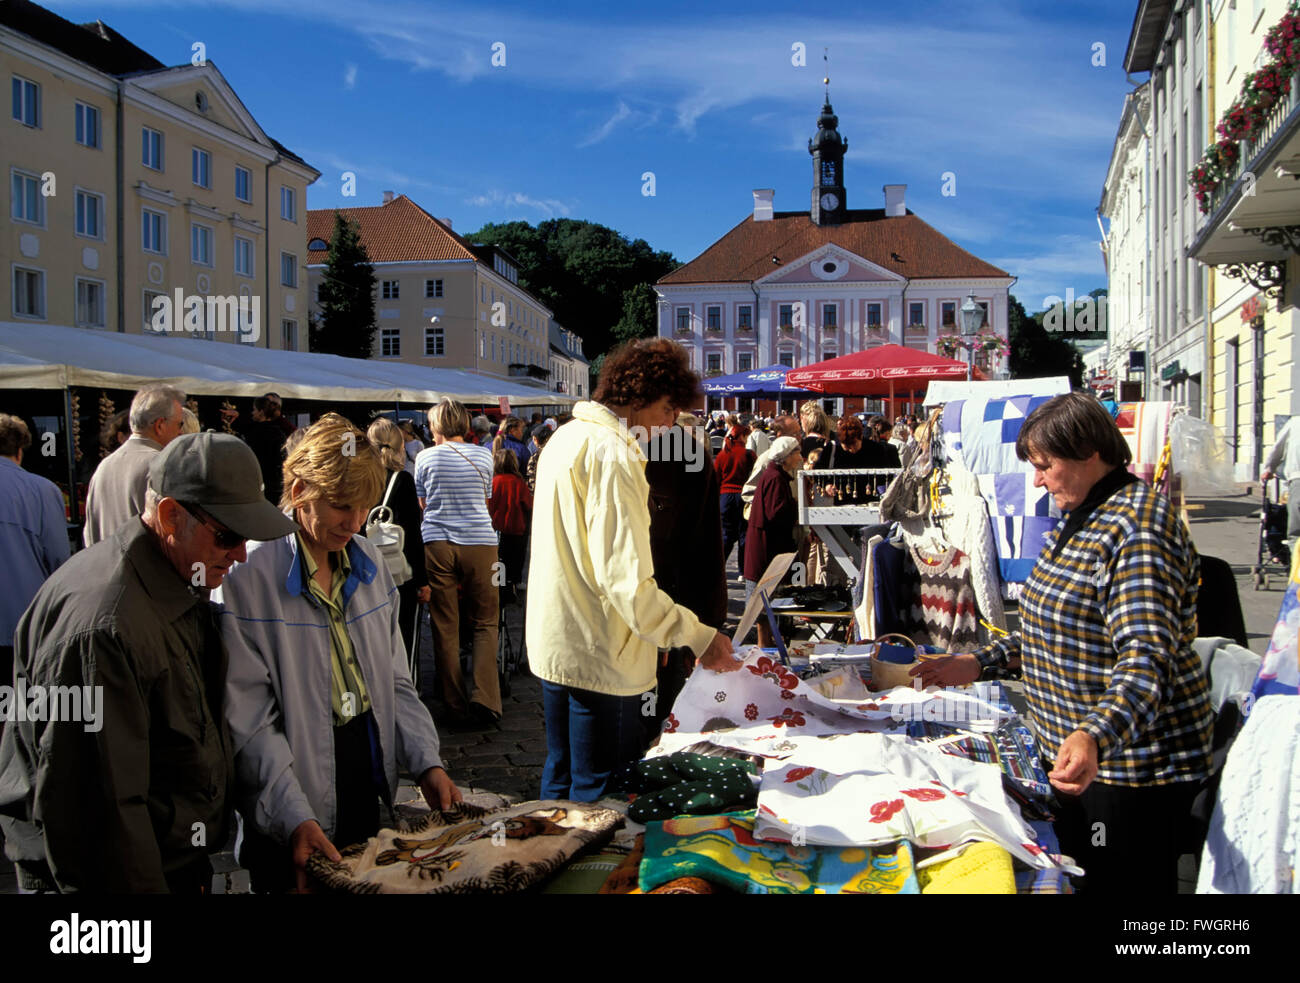 Tartu, mercato dell'artigianato in piazza del municipio, Estonia, Europa Foto Stock